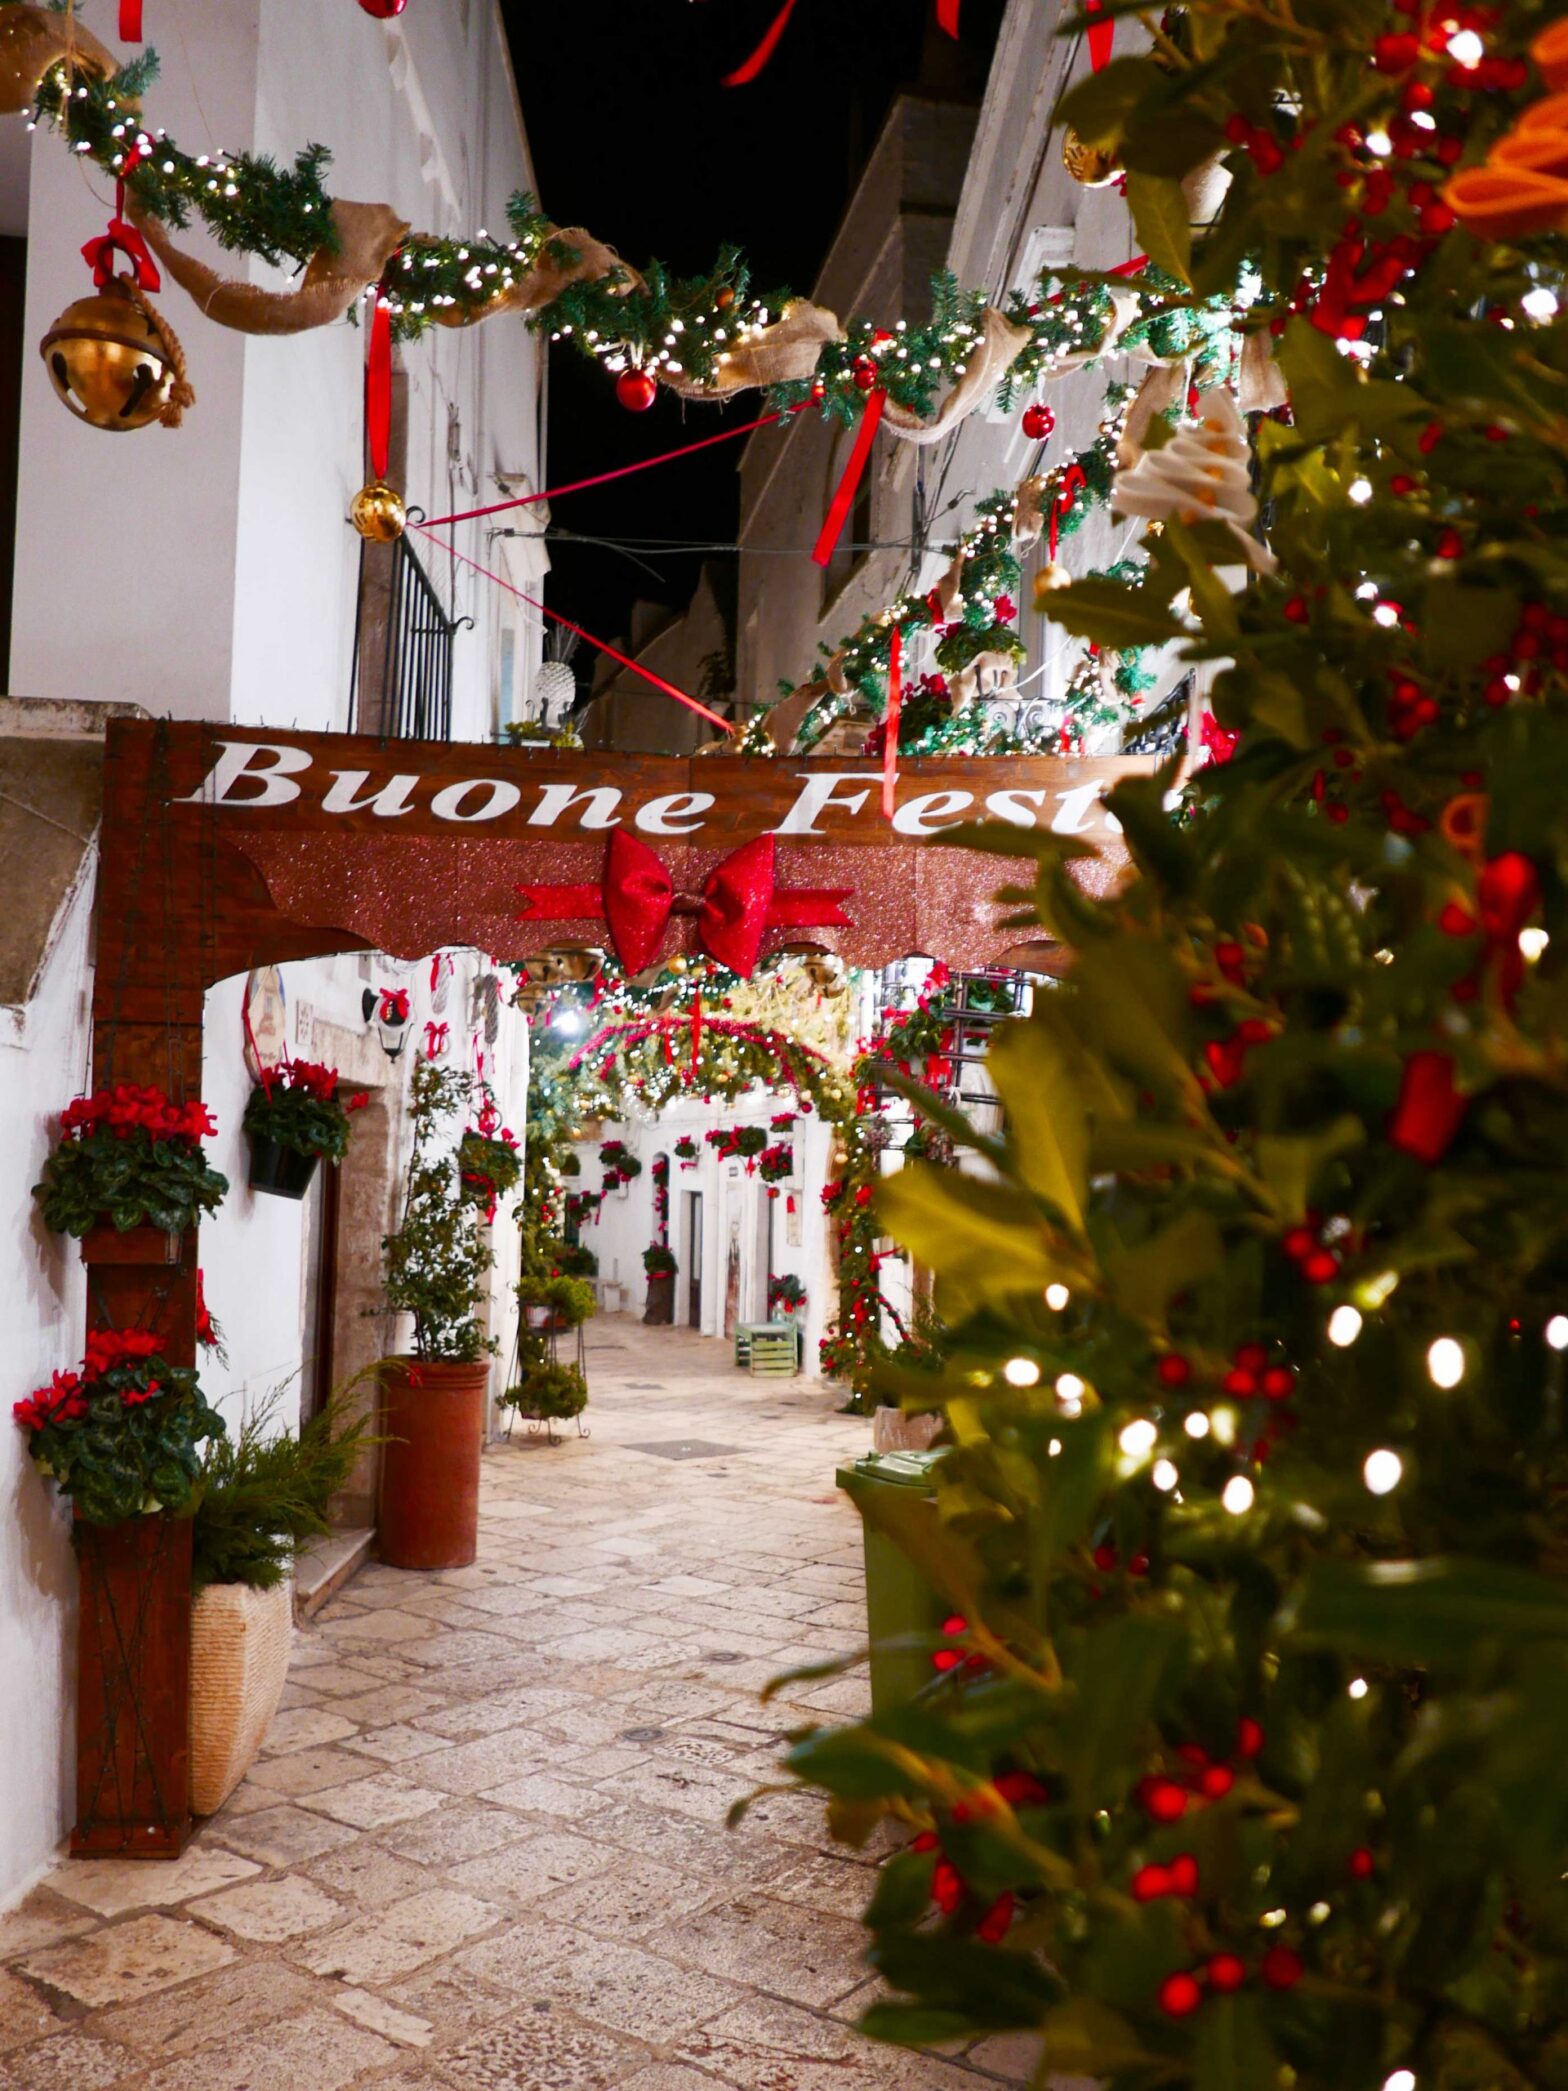 Il weekend dell’Immacolata in Valle d’Itria, tra tradizioni e borghi per assaporare l’arrivo del Natale